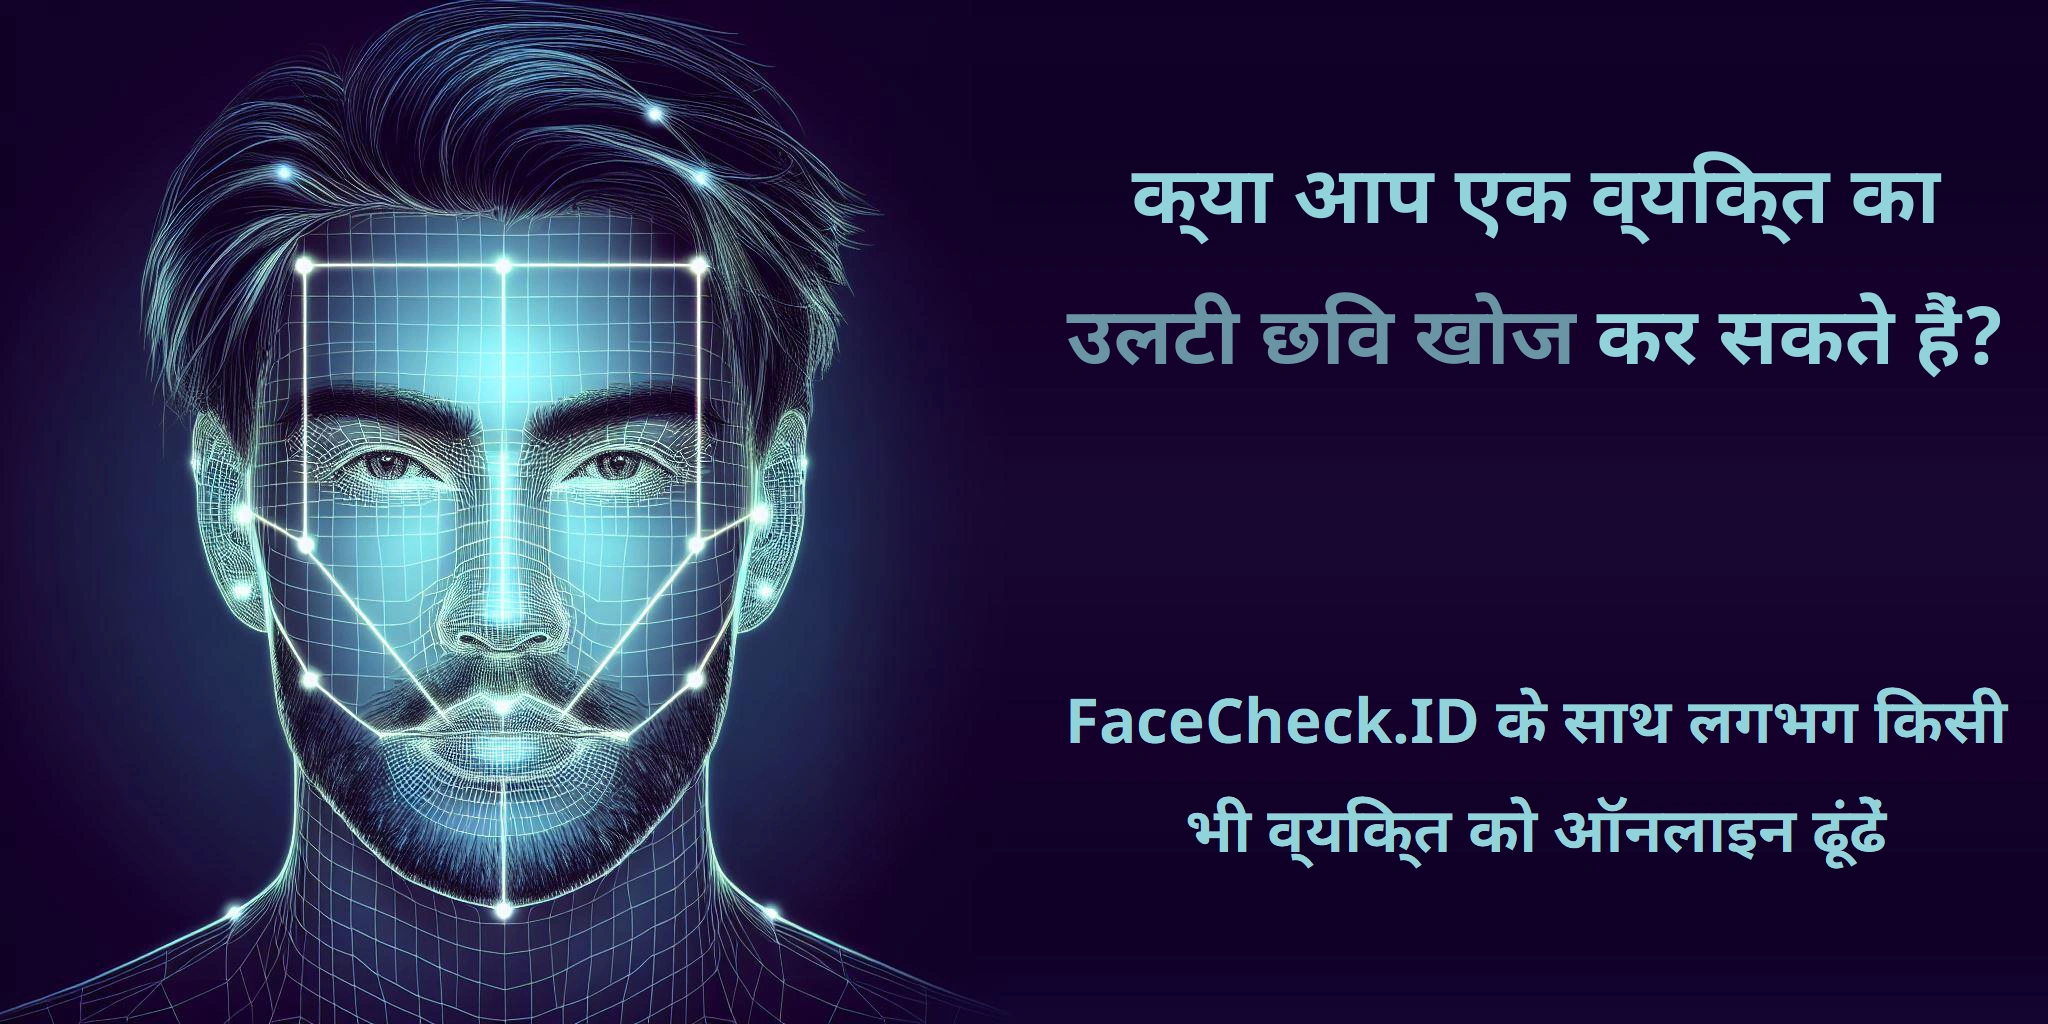 क्या आप एक व्यक्ति का उलटी छवि खोज कर सकते हैं? FaceCheck.ID के साथ लगभग किसी भी व्यक्ति को ऑनलाइन ढूंढें